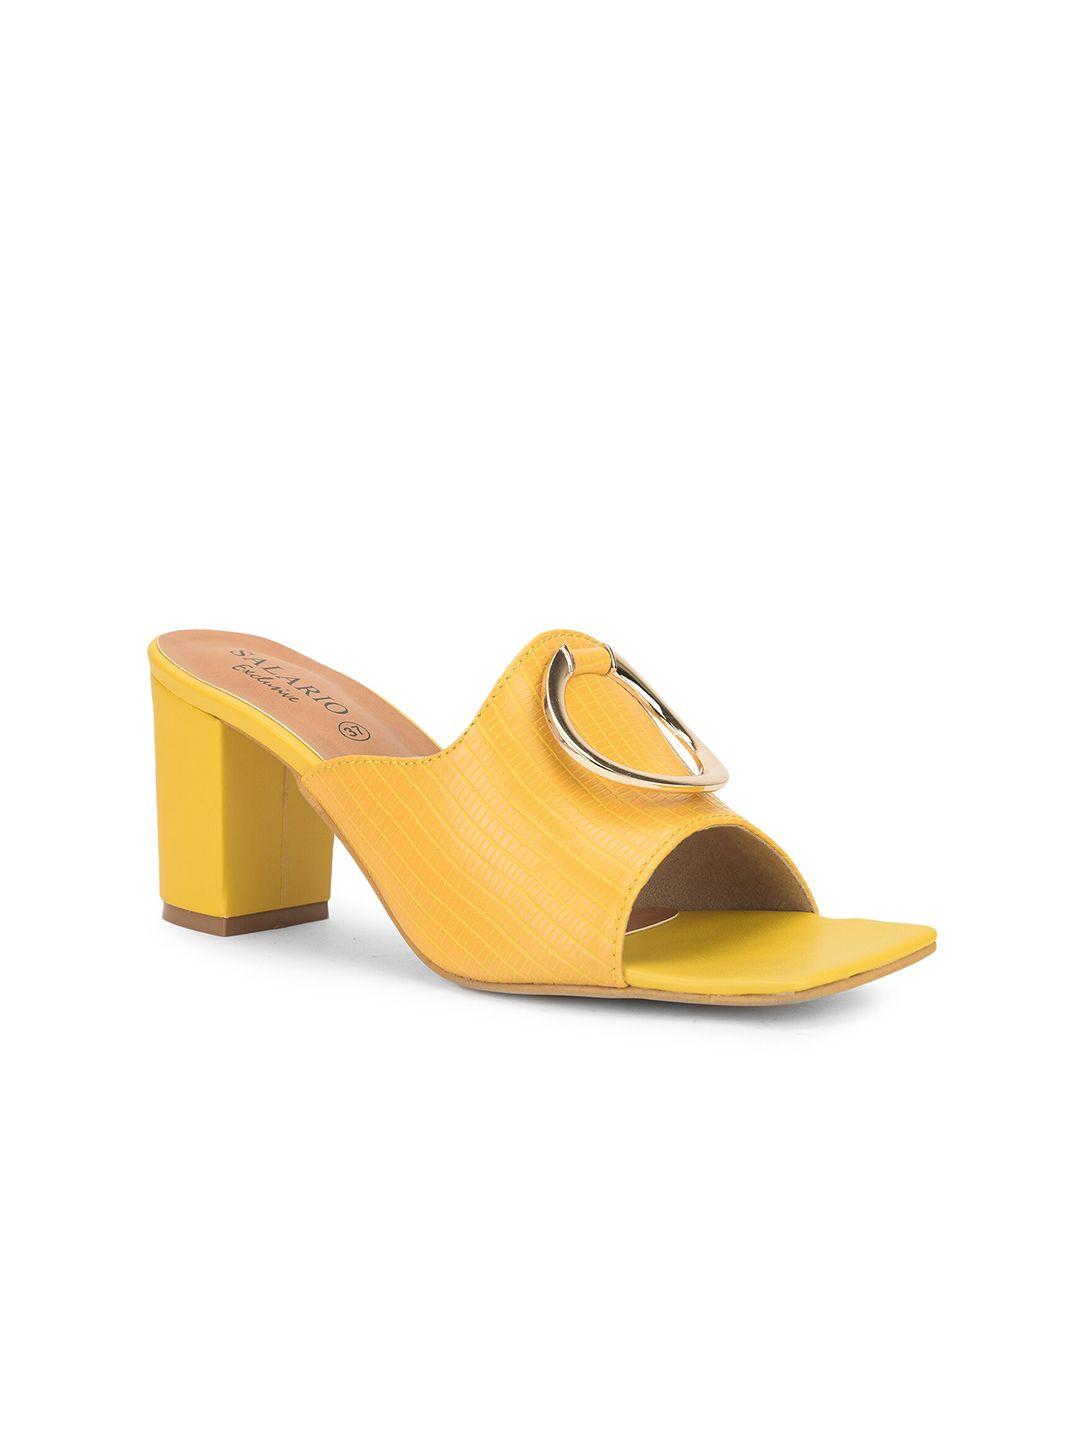 salario women yellow block heels